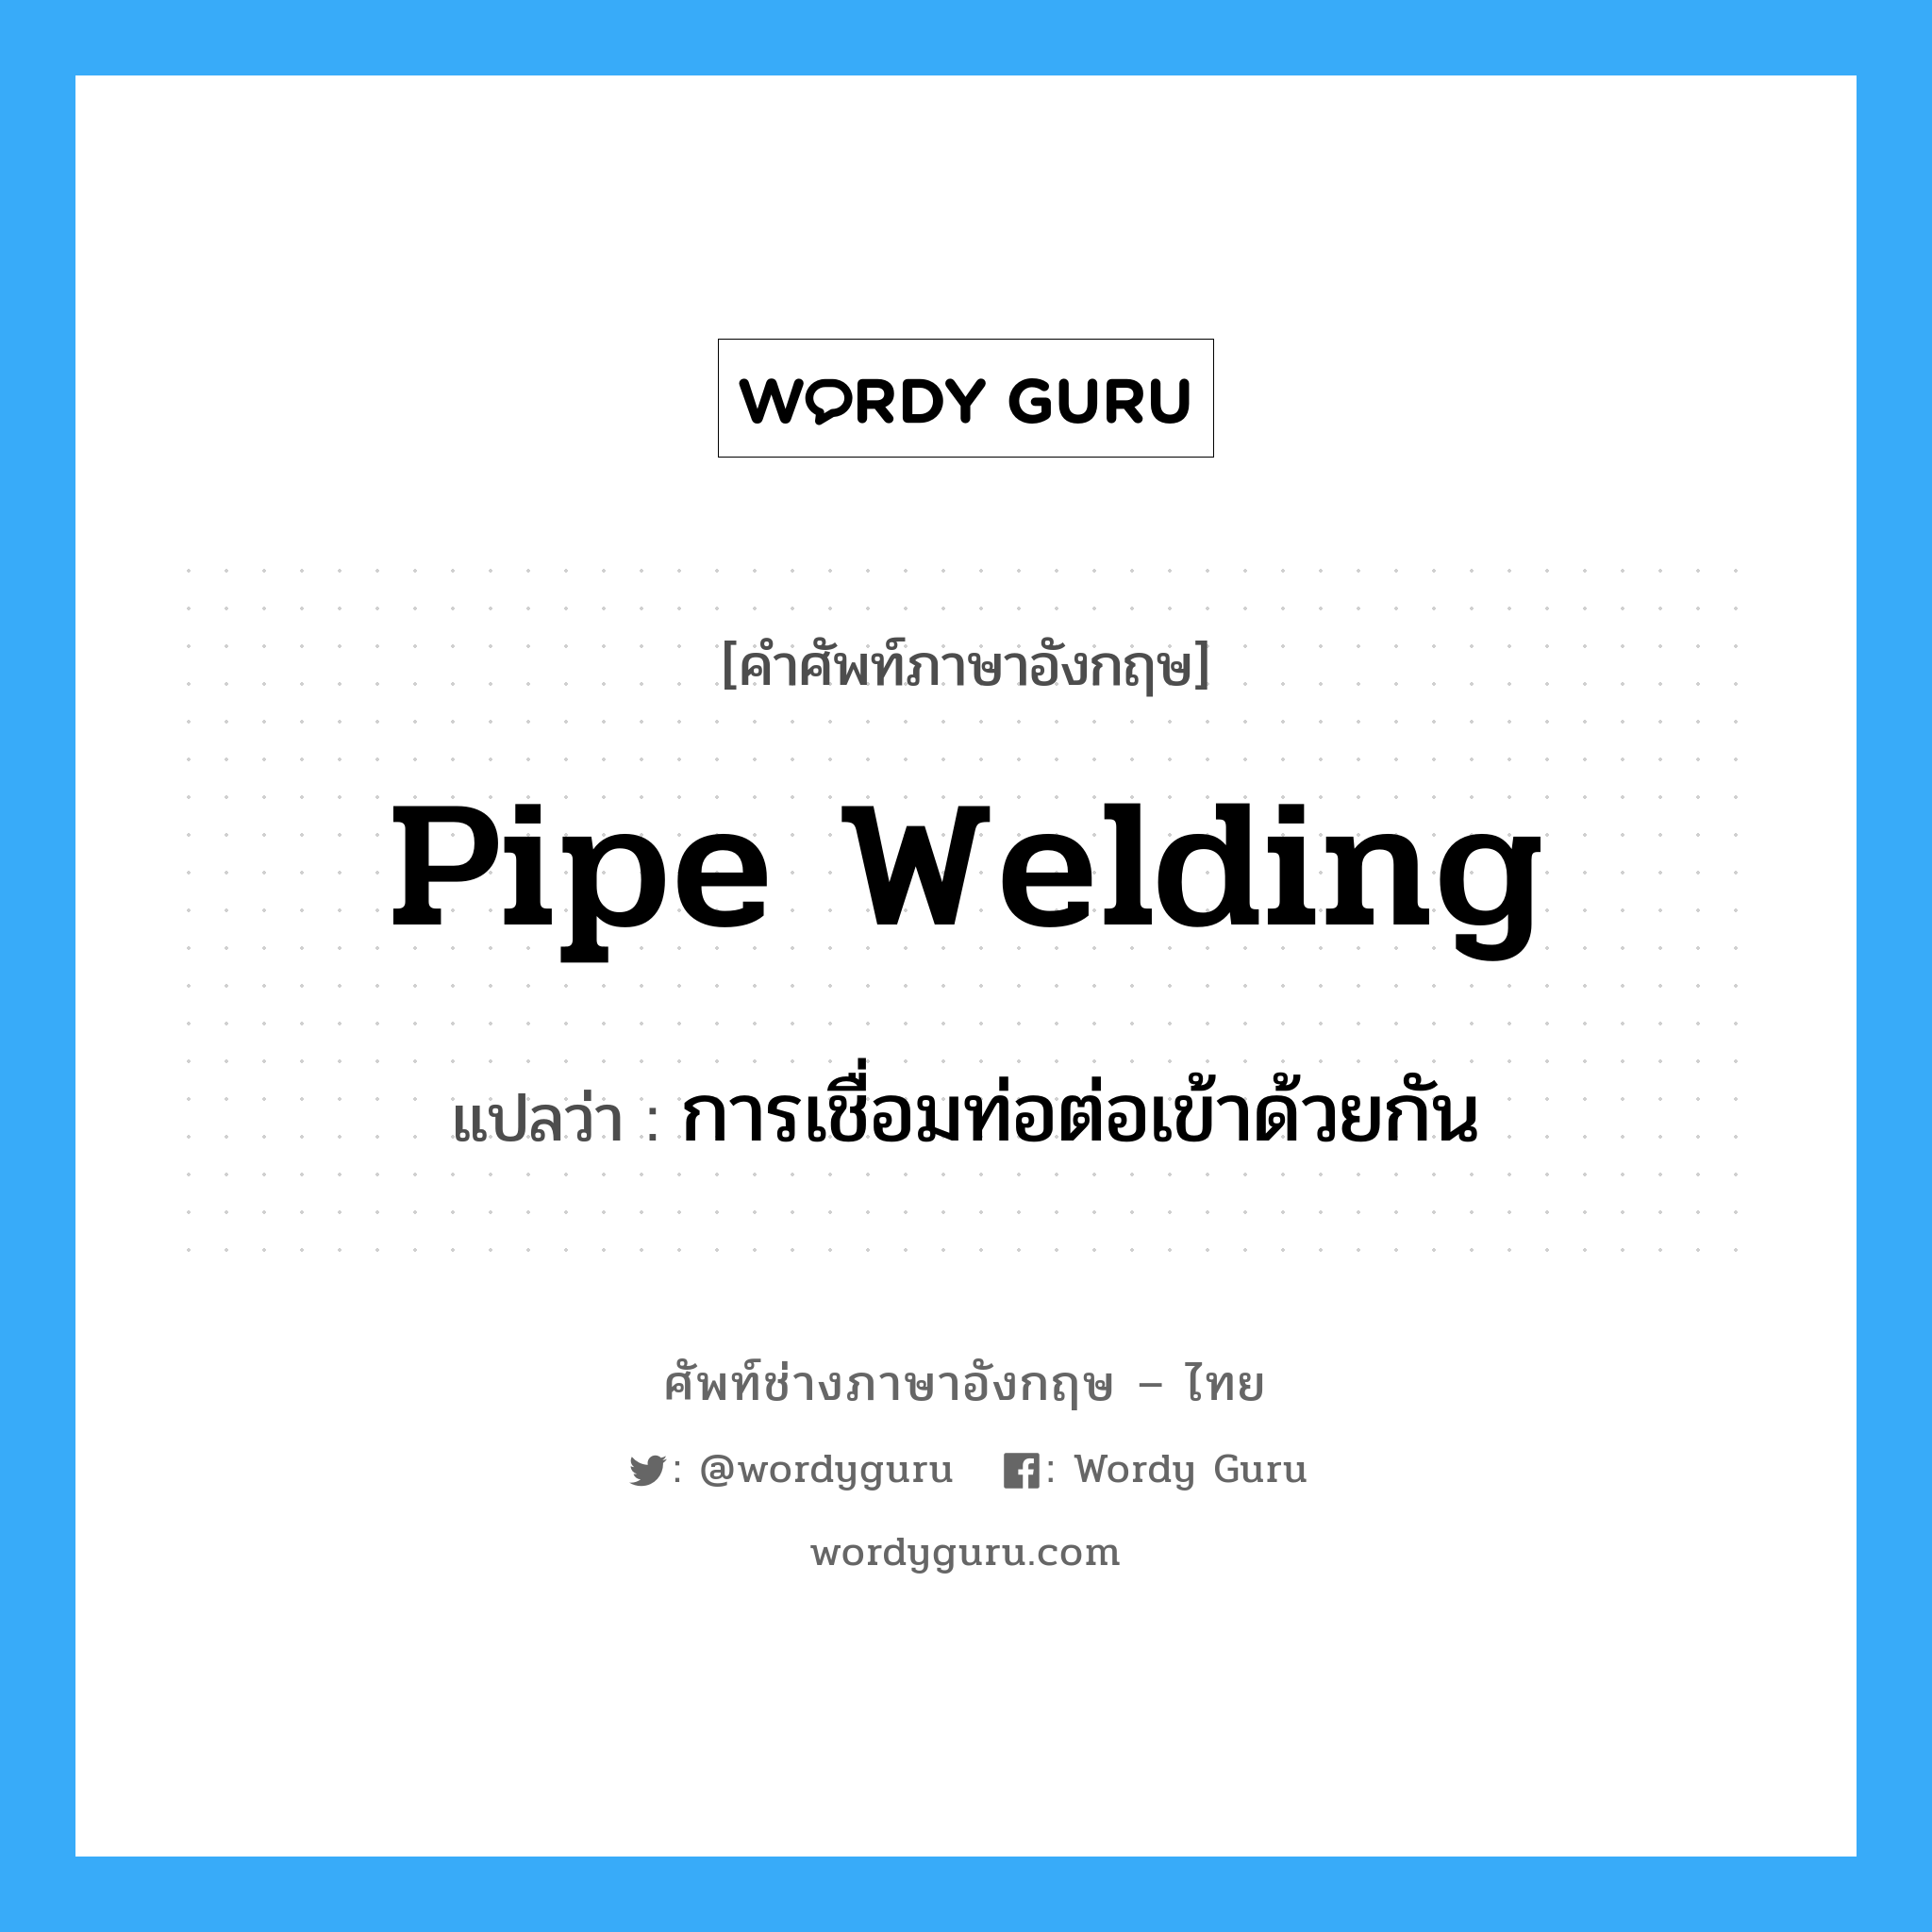 การเชื่อมท่อต่อเข้าด้วยกัน ภาษาอังกฤษ?, คำศัพท์ช่างภาษาอังกฤษ - ไทย การเชื่อมท่อต่อเข้าด้วยกัน คำศัพท์ภาษาอังกฤษ การเชื่อมท่อต่อเข้าด้วยกัน แปลว่า pipe welding